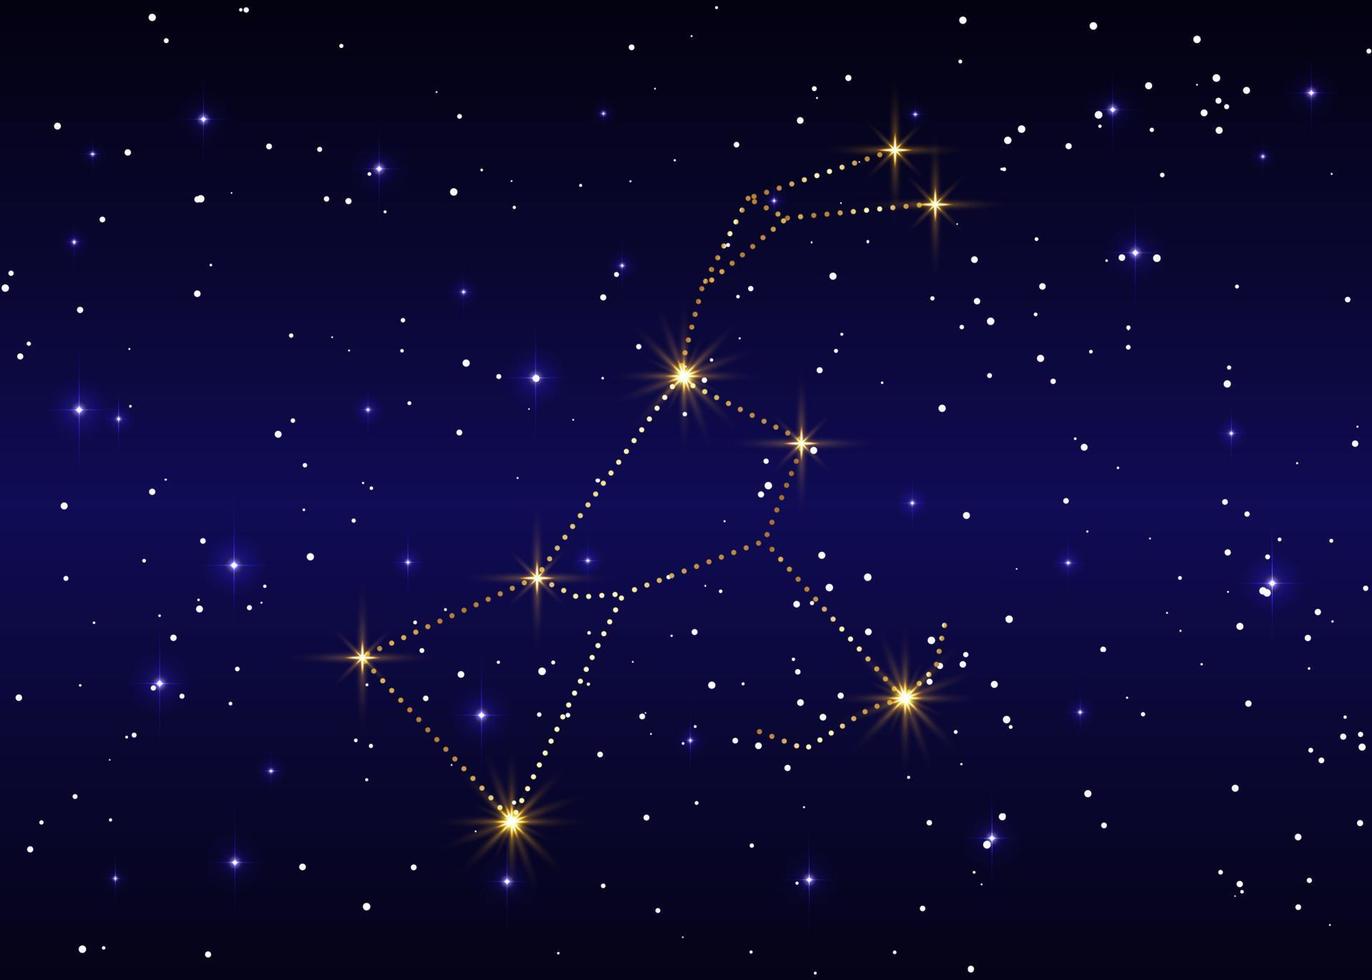 Orion-sterrenbeeld, vectorillustratie tegen de sterrenhemel, luxe gouden vertegenwoordiging in blauwe melkwegachtergrond vector